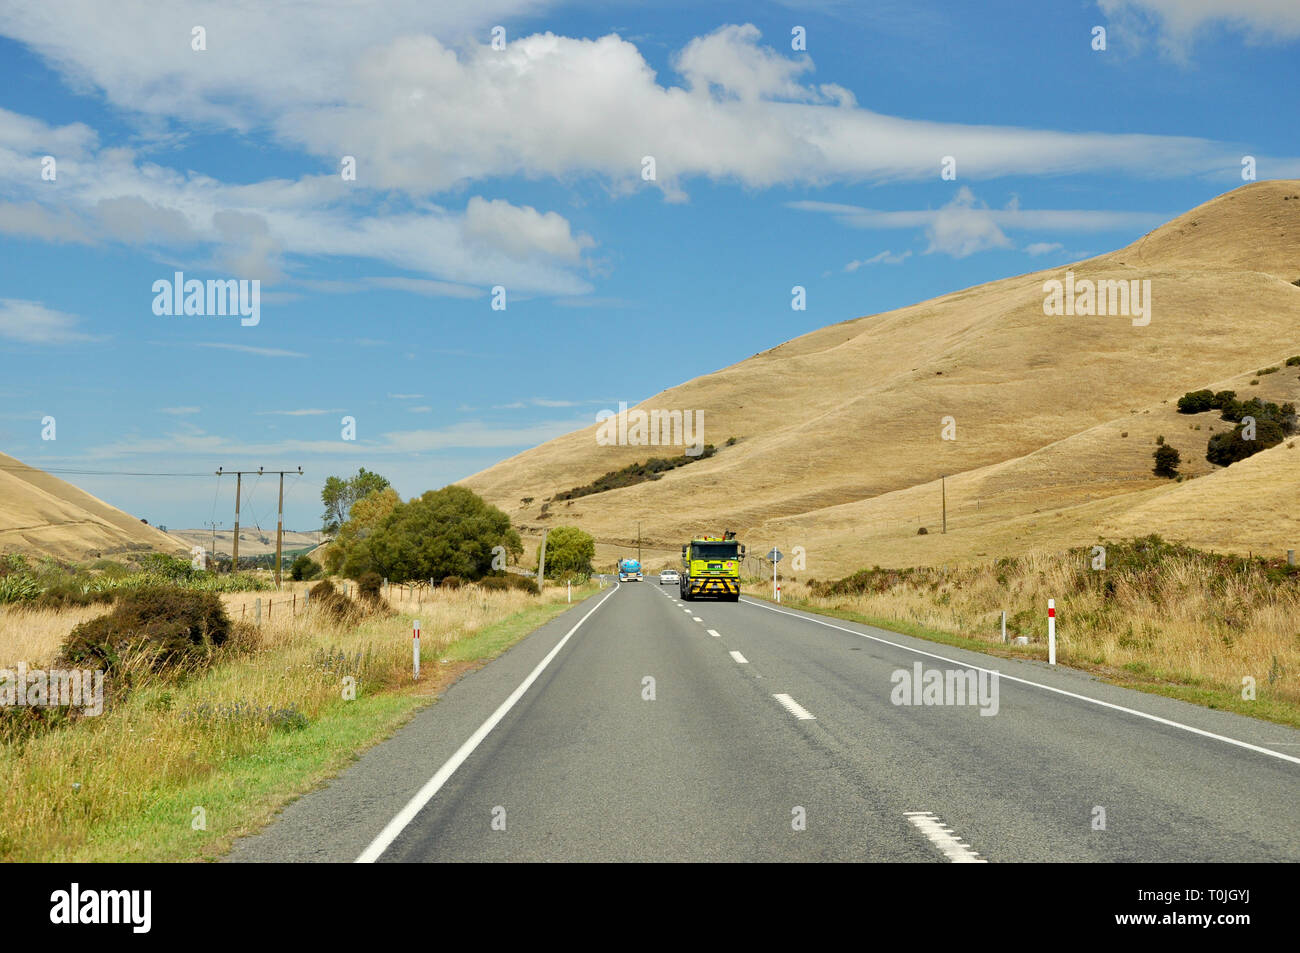 Autostrada statale 1 nella regione di Marlborough nell'Isola del Sud della Nuova Zelanda. SH1. Il traffico su strada guidando attraverso colline ondulate campagne in estate Foto Stock